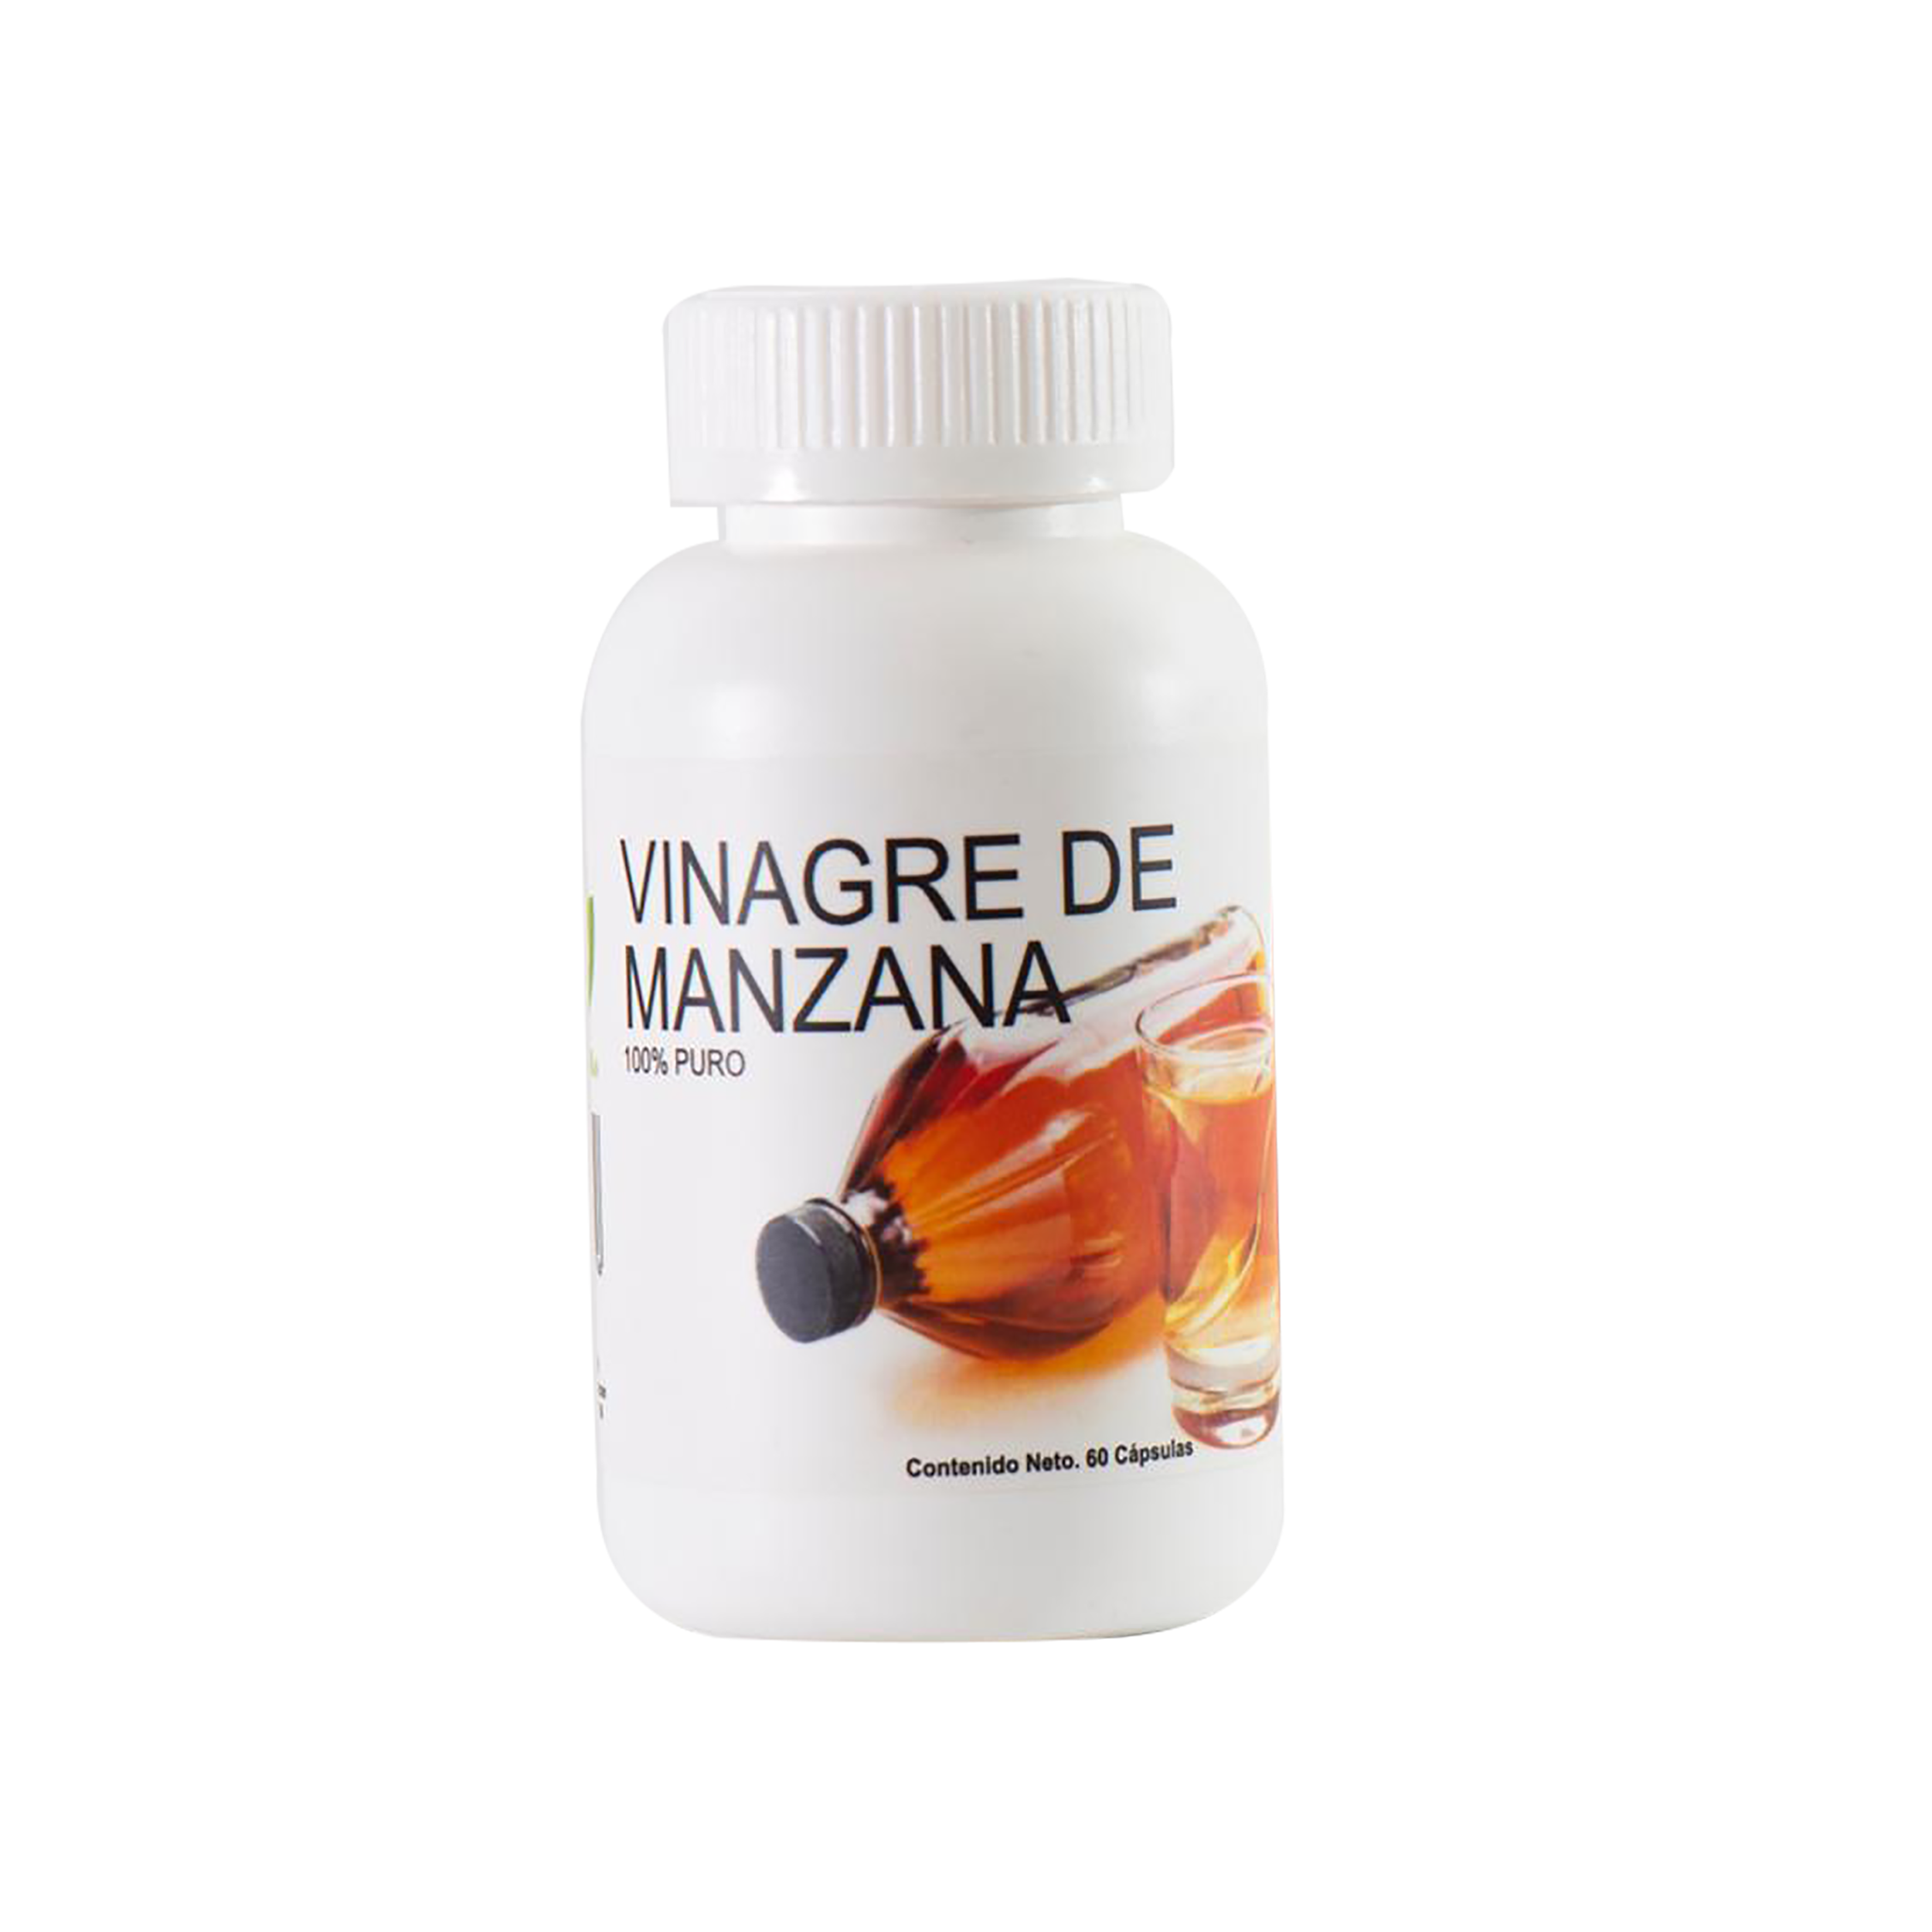 Viridi natural -Vinagre de manzana 60 cápsulas 500 Mg